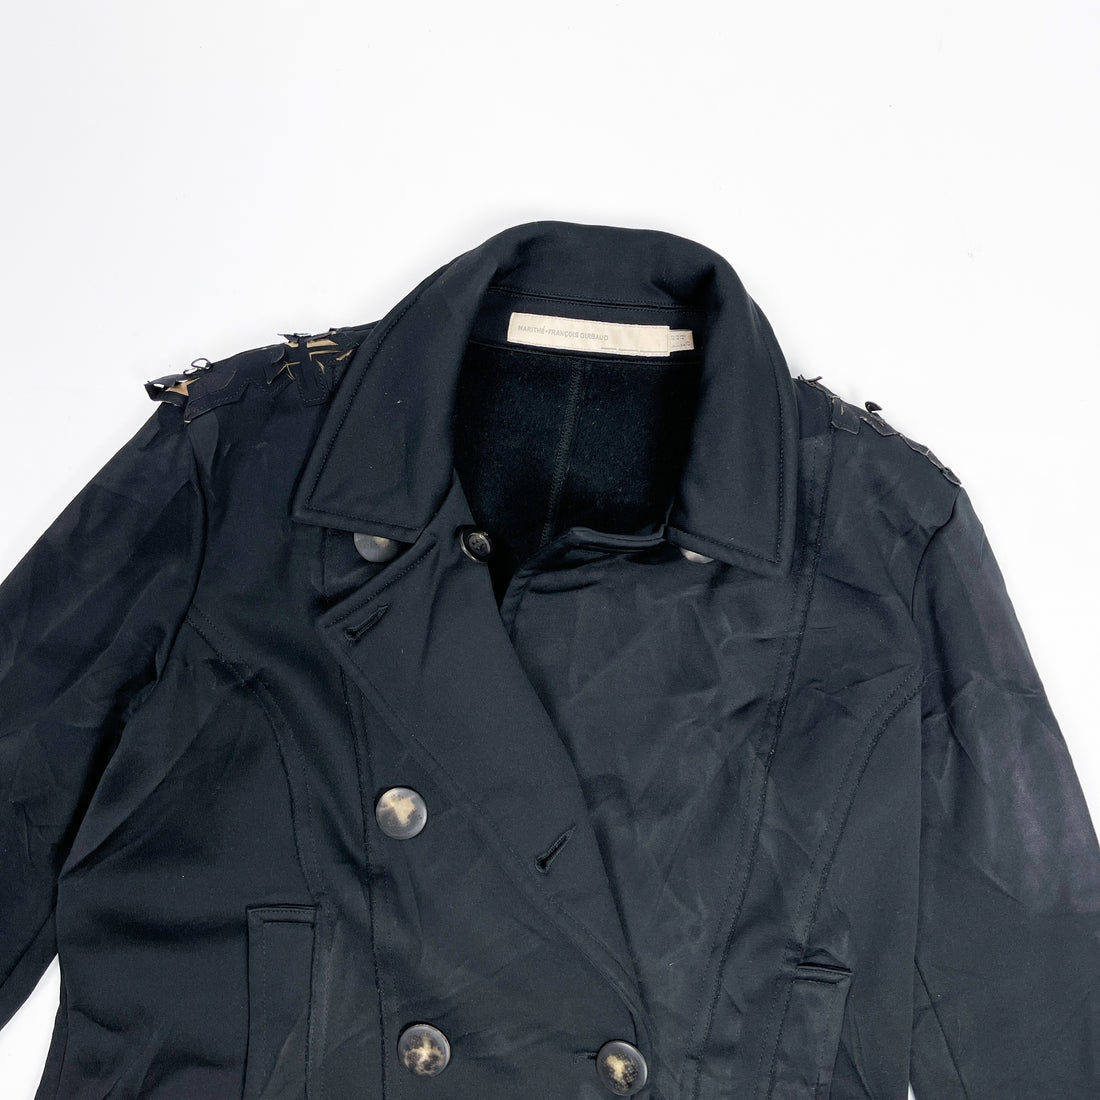 Marithé Francois Girbaud Straight Black Jacket 2000's